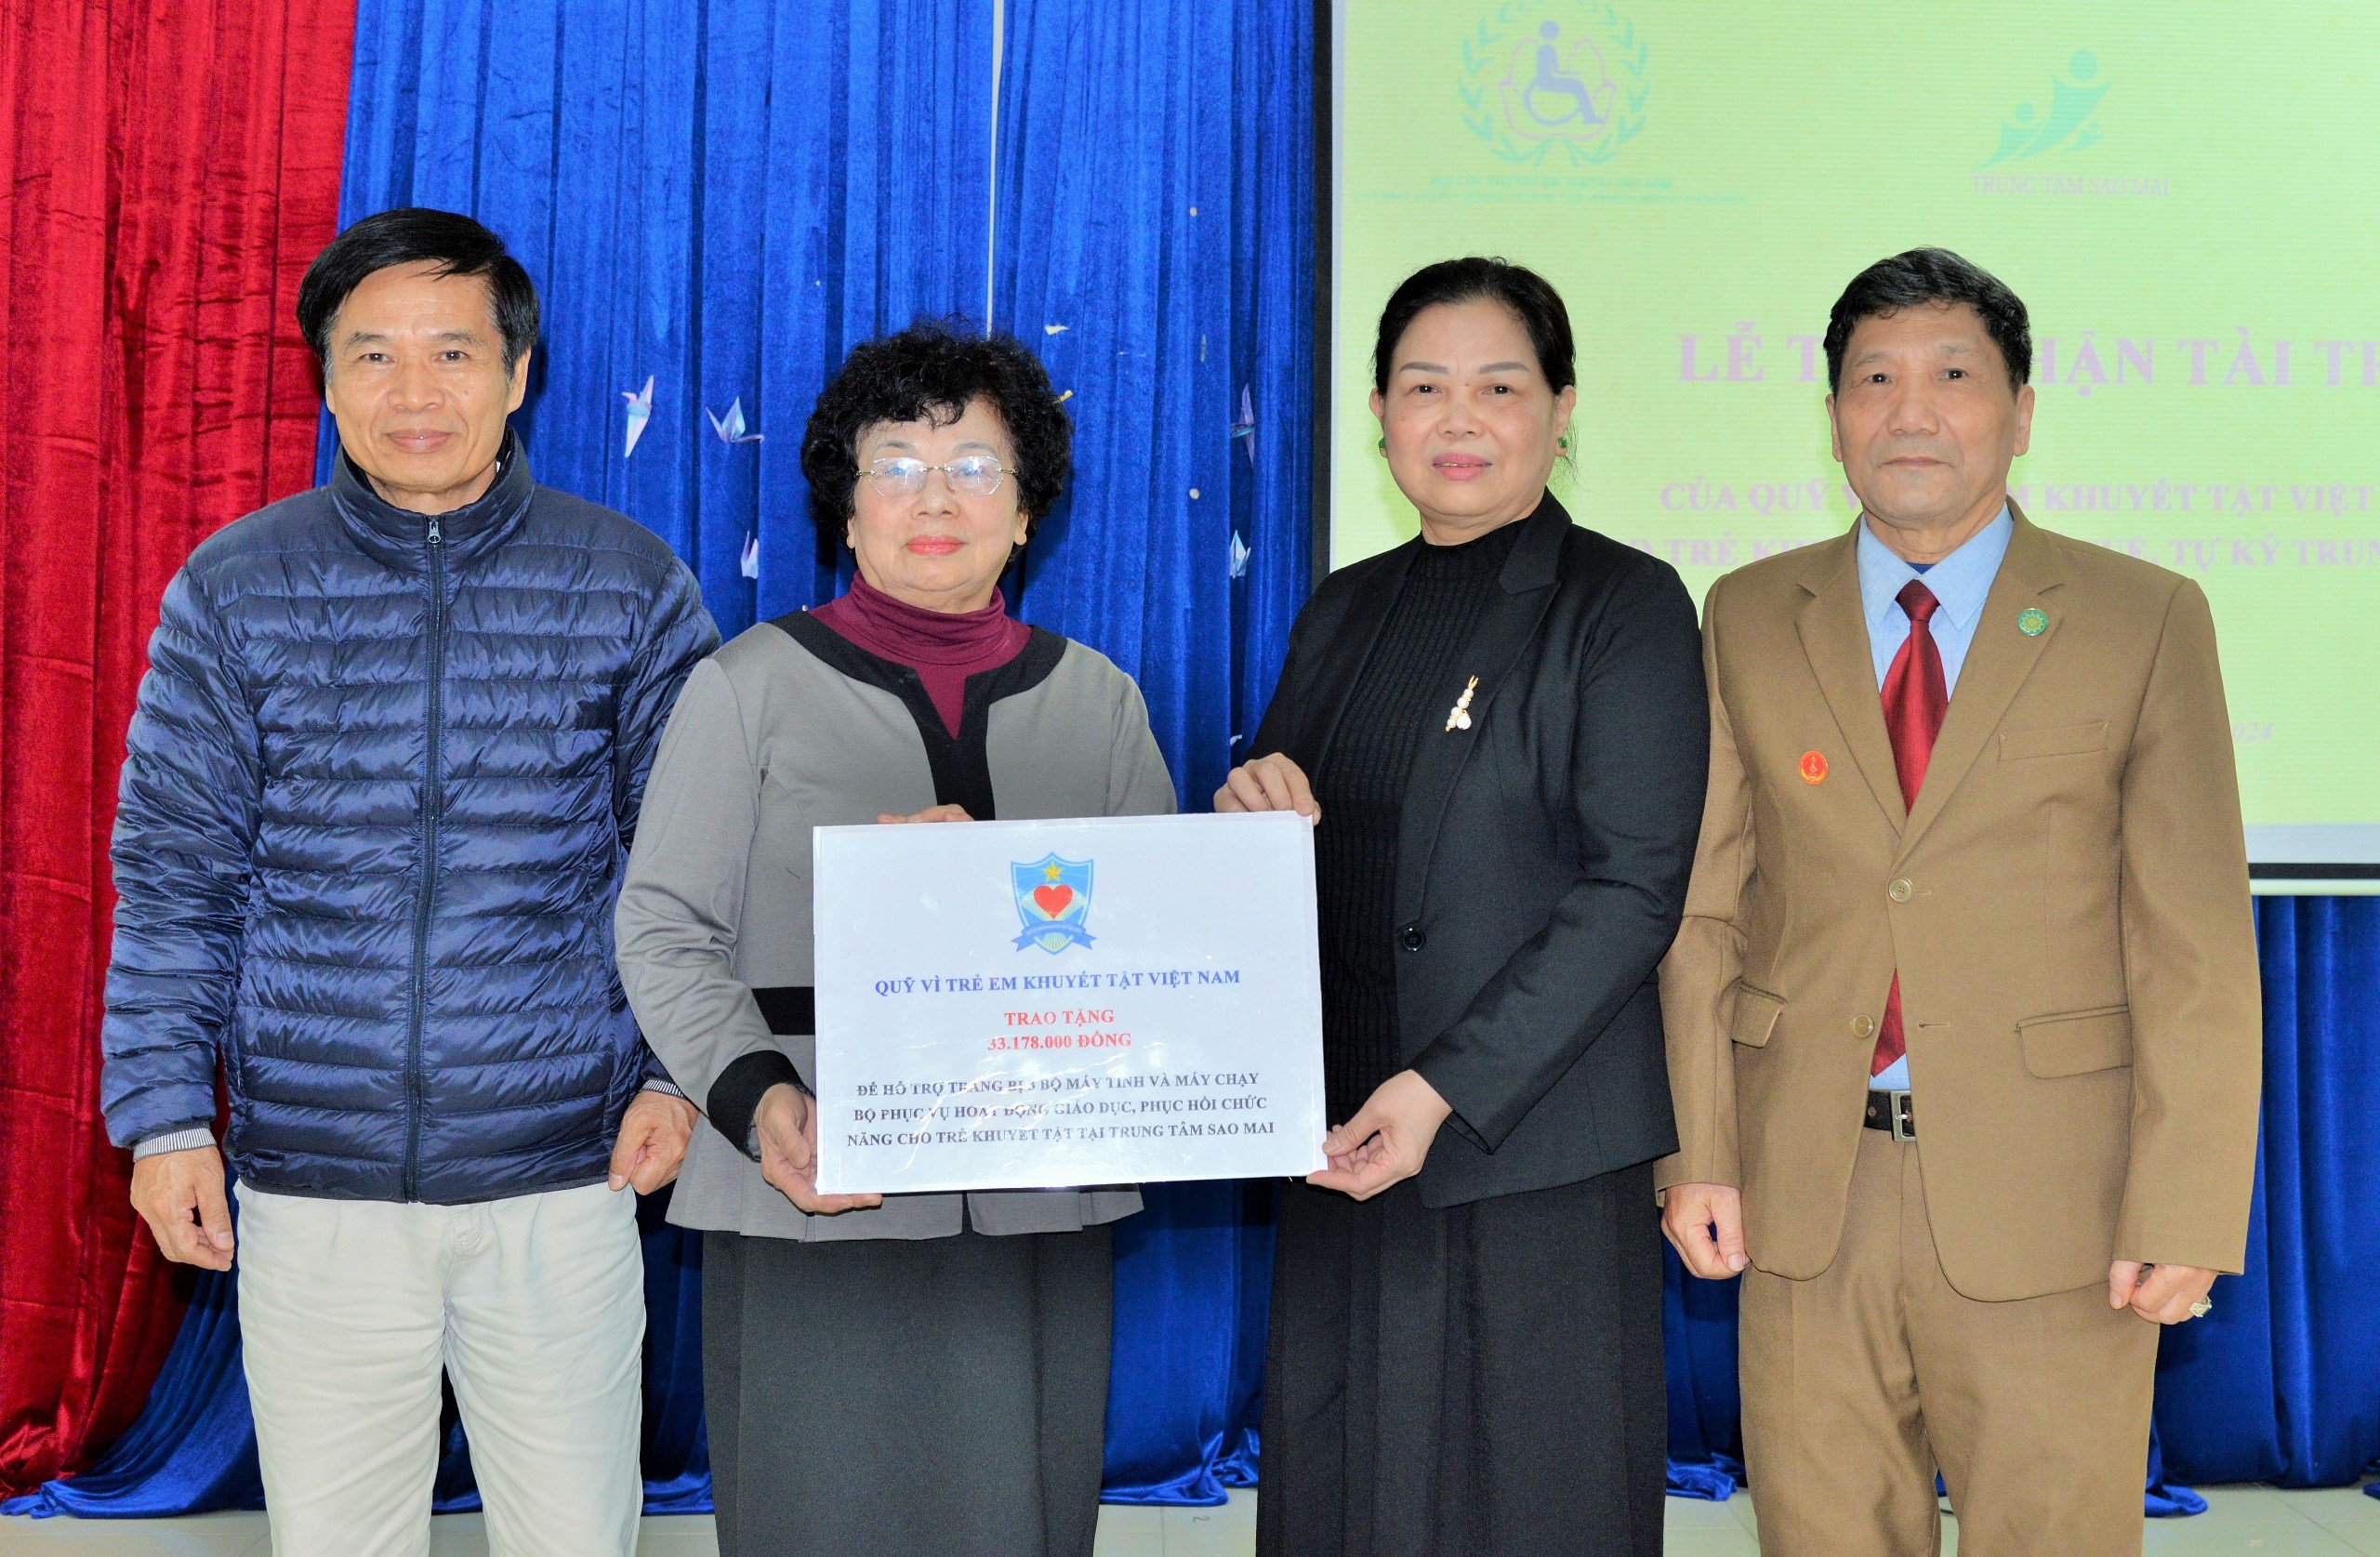 Quỹ Vì trẻ em khuyết tật Việt Nam trao tặng trang thiết bị mới cho Trung tâm Sao Mai